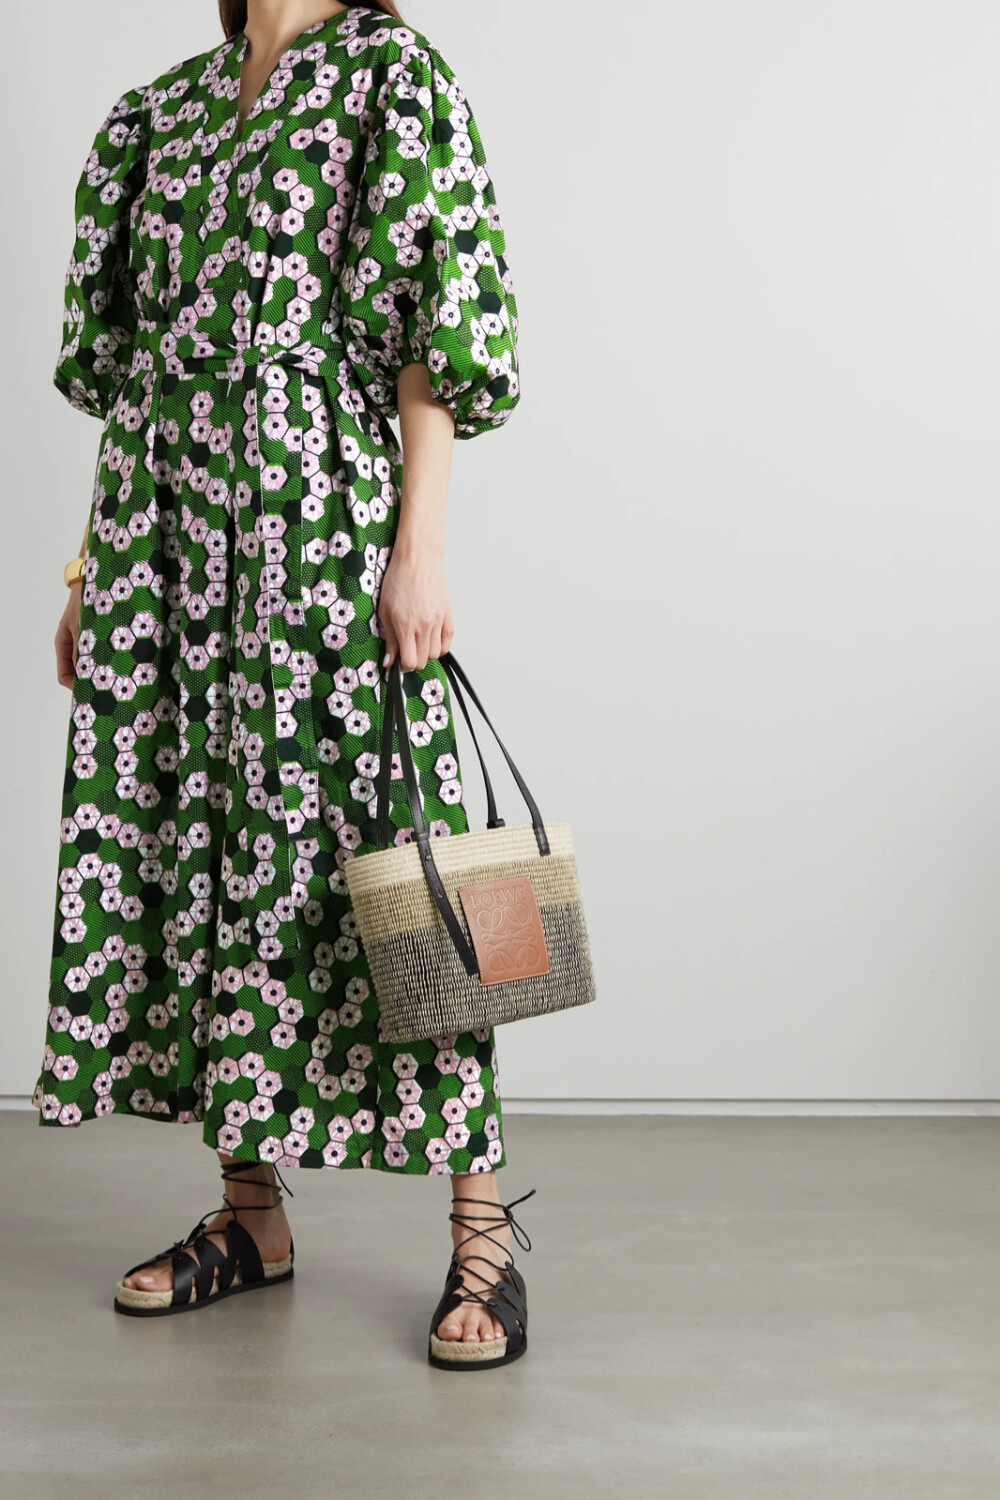 Odile Jacobs 在母亲的带领下走进了非洲特色打蜡纯棉的世界，在成立同名品牌后，她更是将这一面料奉为品牌的核心元素。这款连衣裙以手工精心制成，灵活系带强调出优雅的裹身设计，绿色与粉色几何感印花热烈而鲜艳。只需搭配一双凉鞋与编织手提包，你便可以完成整套造型，以时髦姿态迎接夏日。